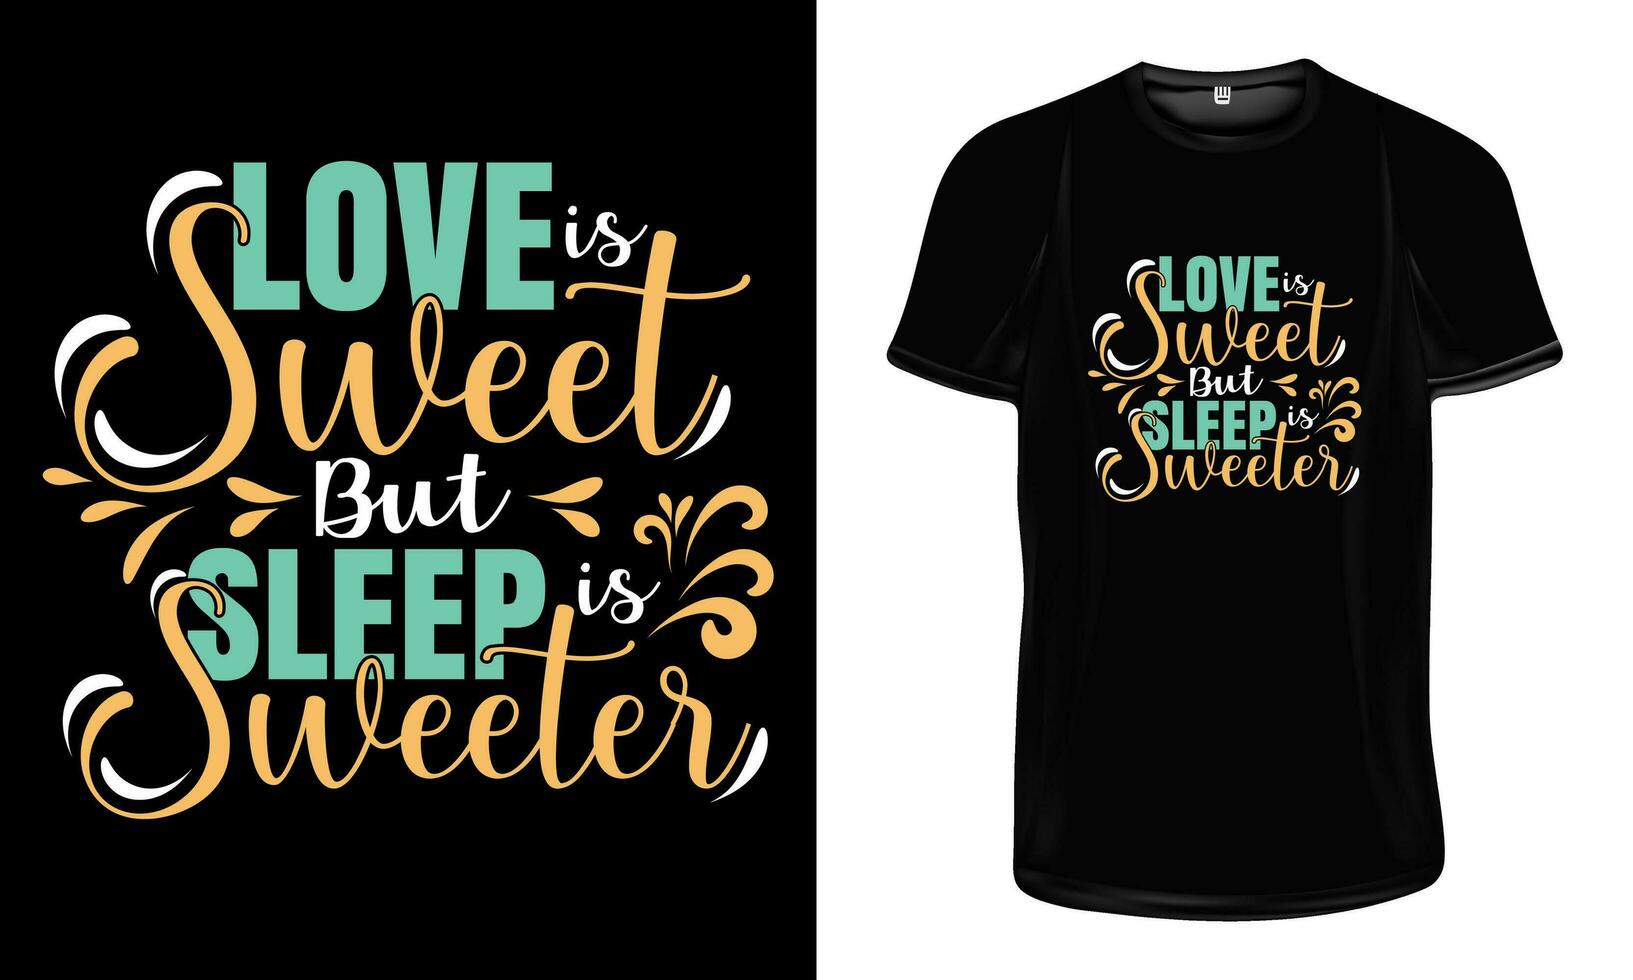 liefde is zoet maar slaap is zoeter t overhemd ontwerp. romantisch en grappig citaten typografie t overhemd ontwerp. vector